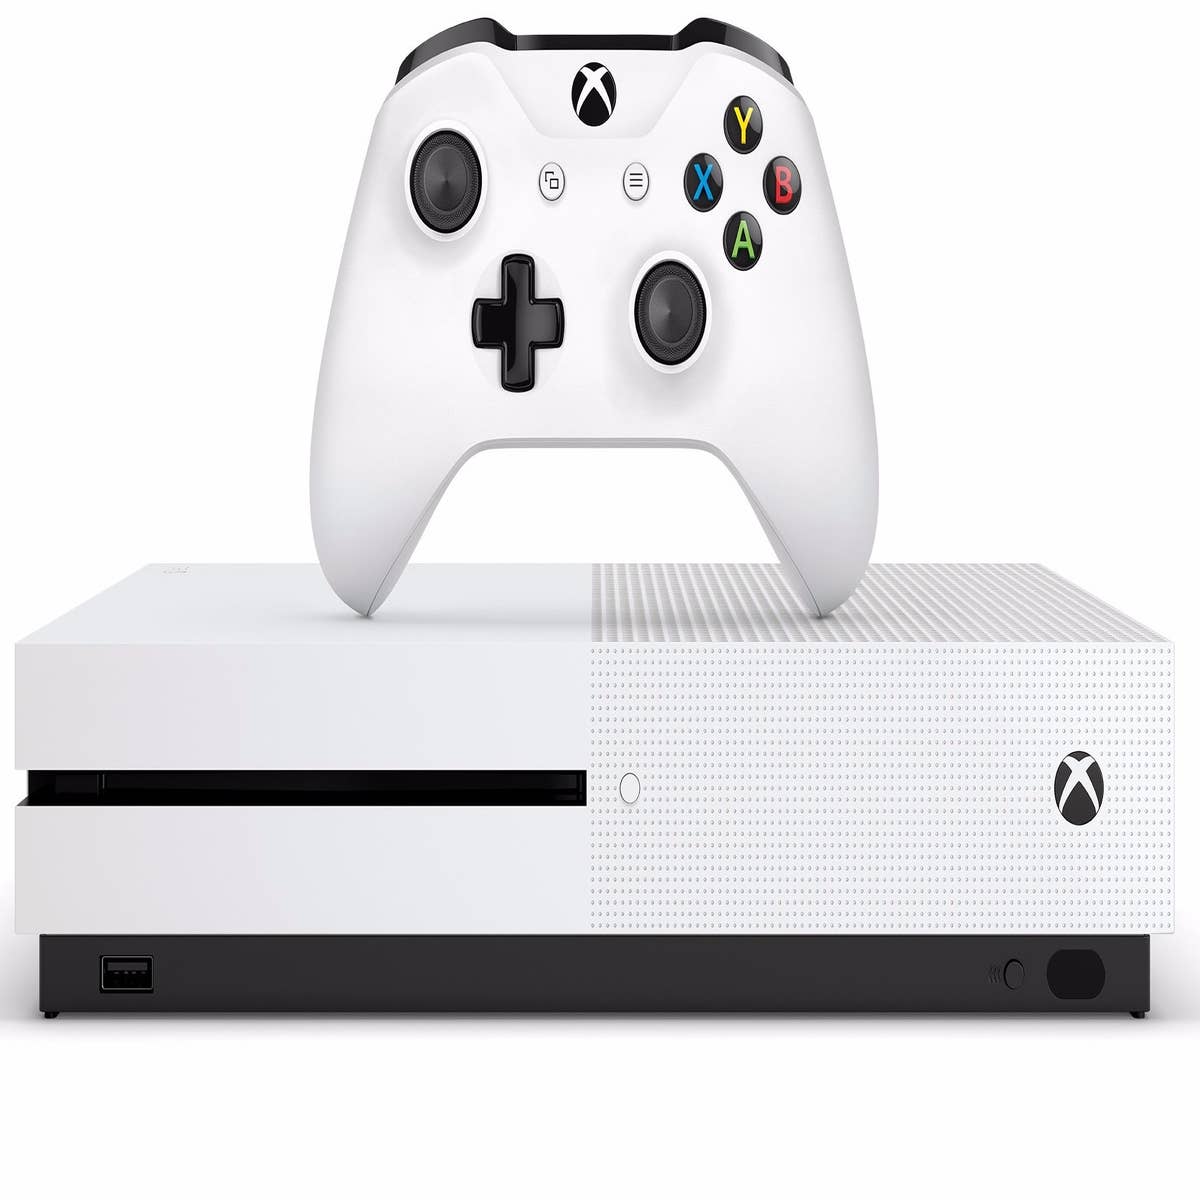 Xbox One terá suporte a HD externo para armazenar games